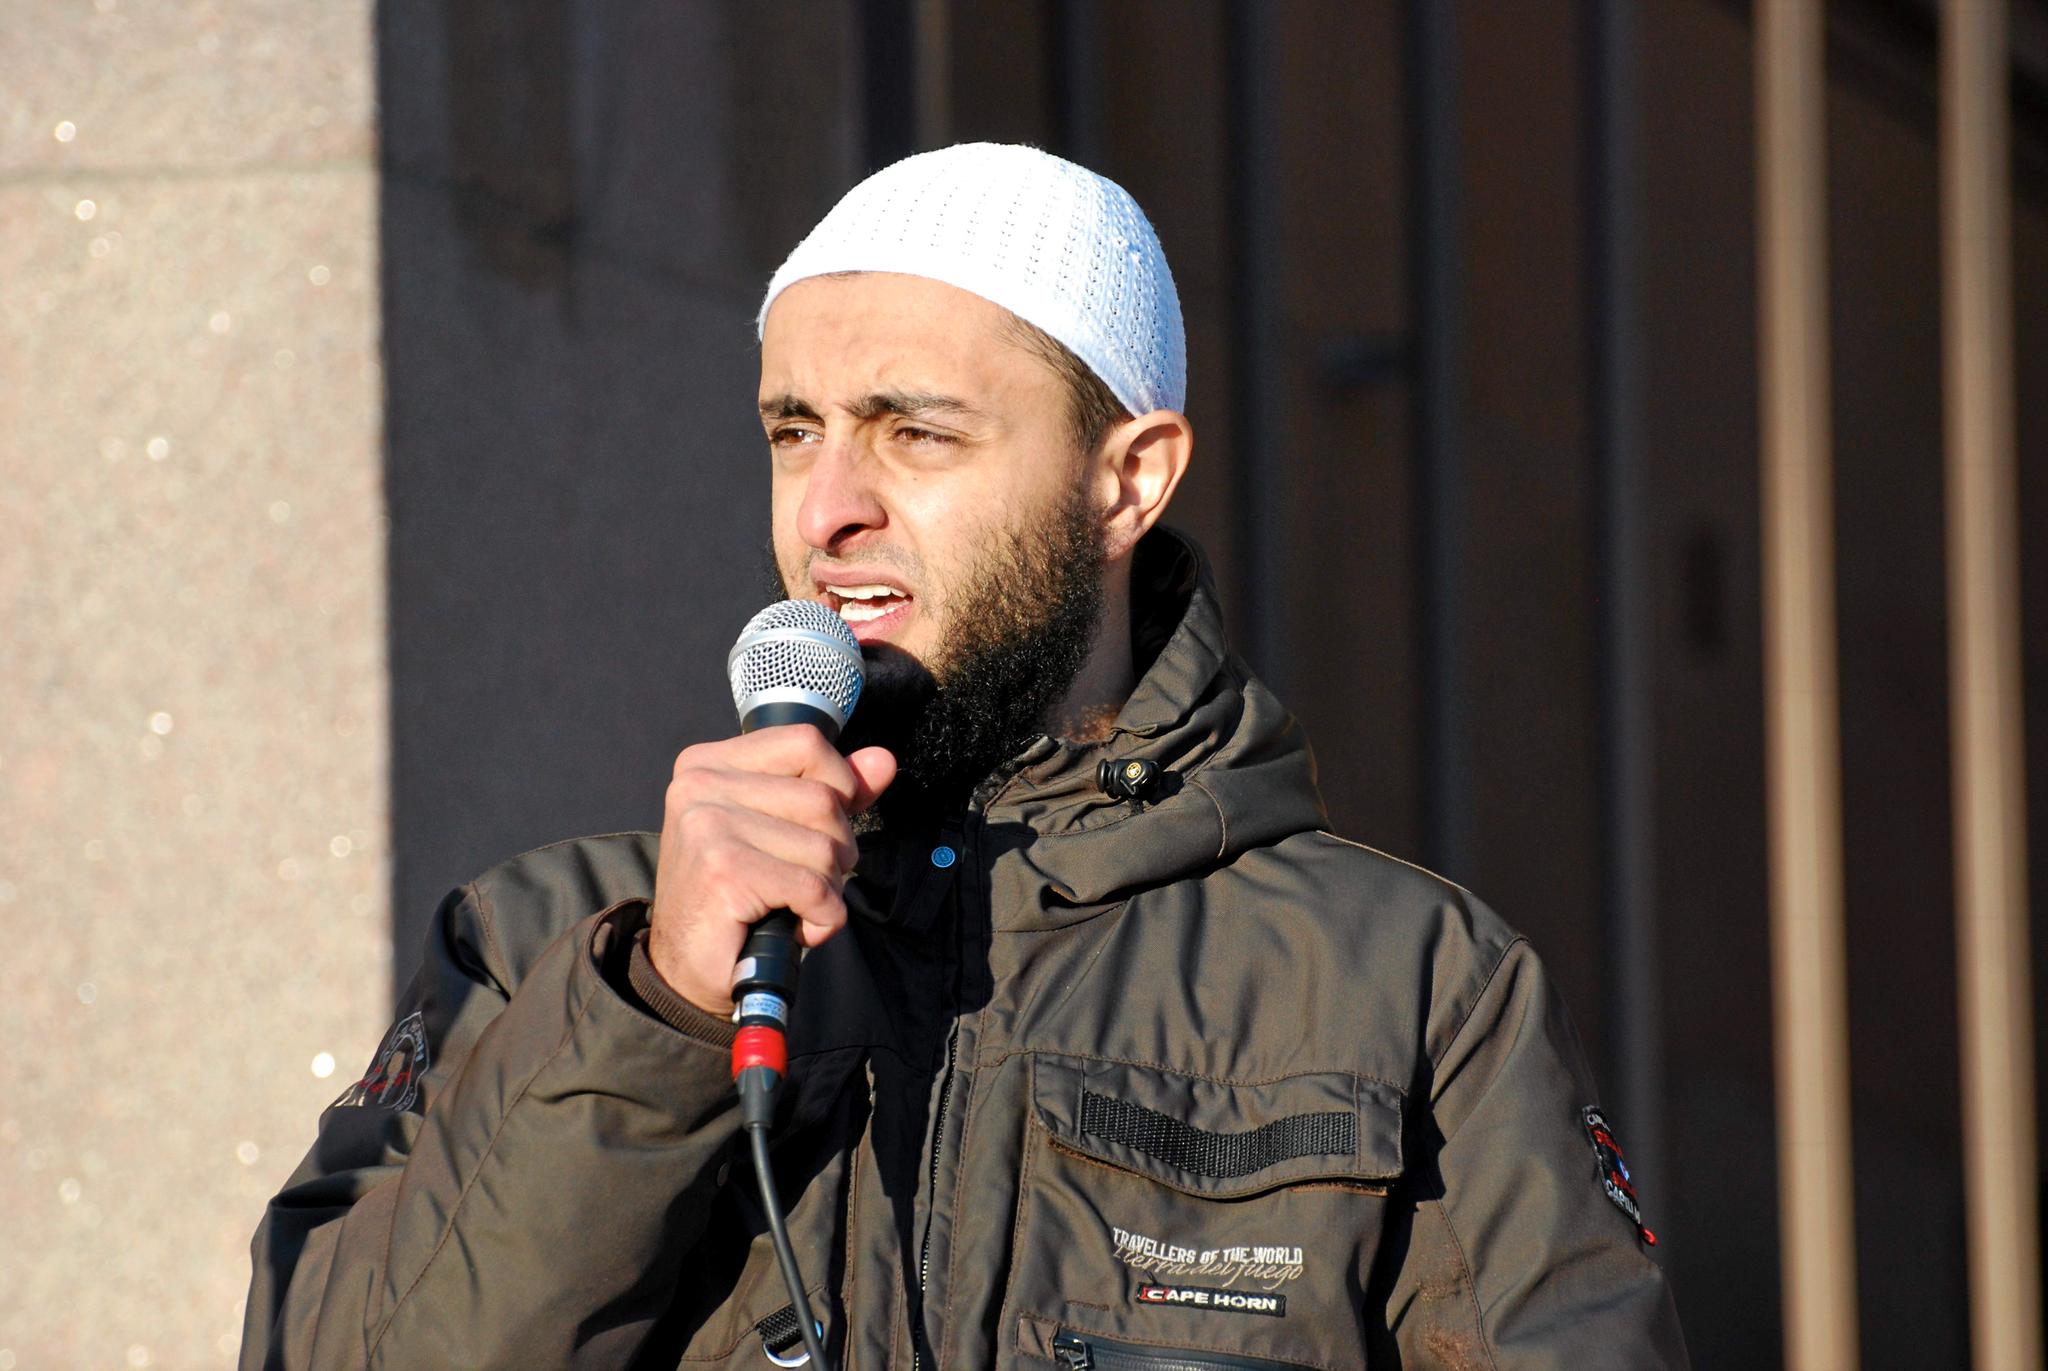 Mohyeldeen Mohammad er en frontperson i det radikale islamistmiljøet i Norge.